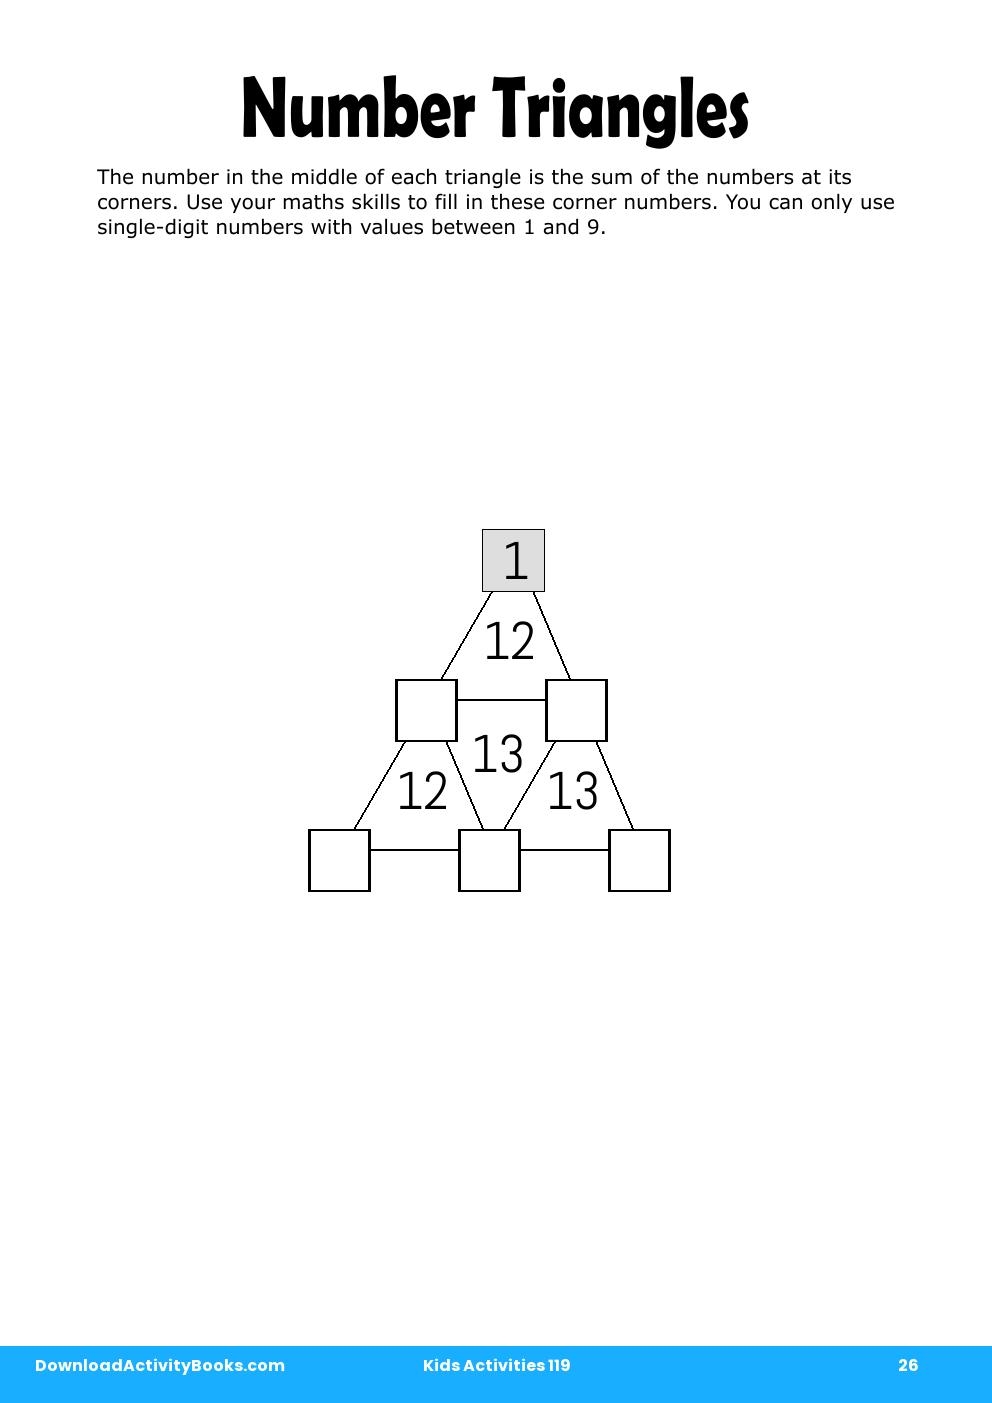 Number Triangles in Kids Activities 119